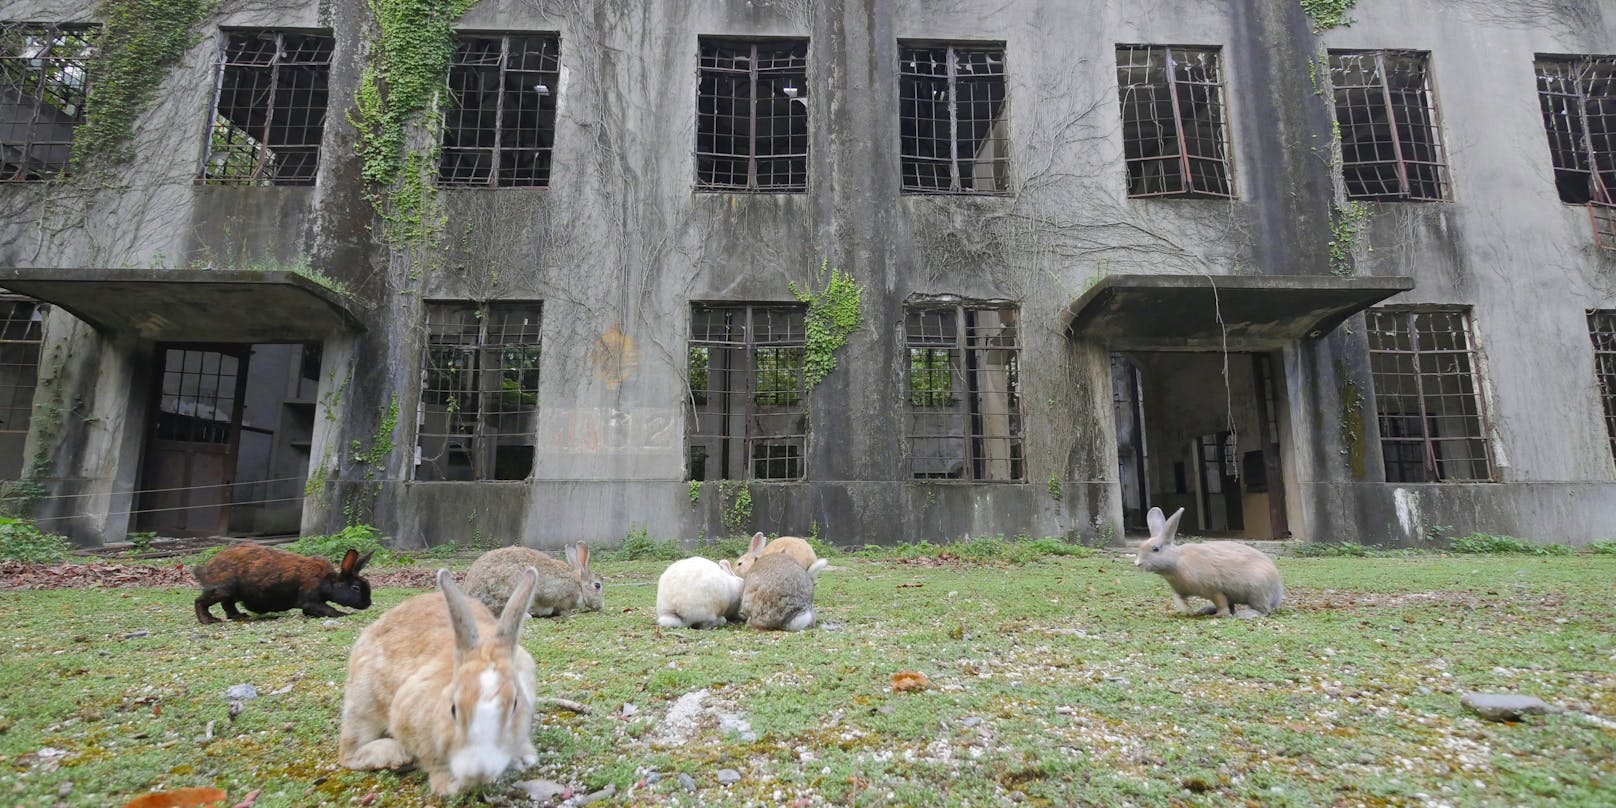 Kaninchen in den Ruinen einer Senfgasfabrik. Nach dem Krieg wurden die Fabriken verlassen und die Kaninchen angeblich freigelassen - nun durften sie sich austoben.